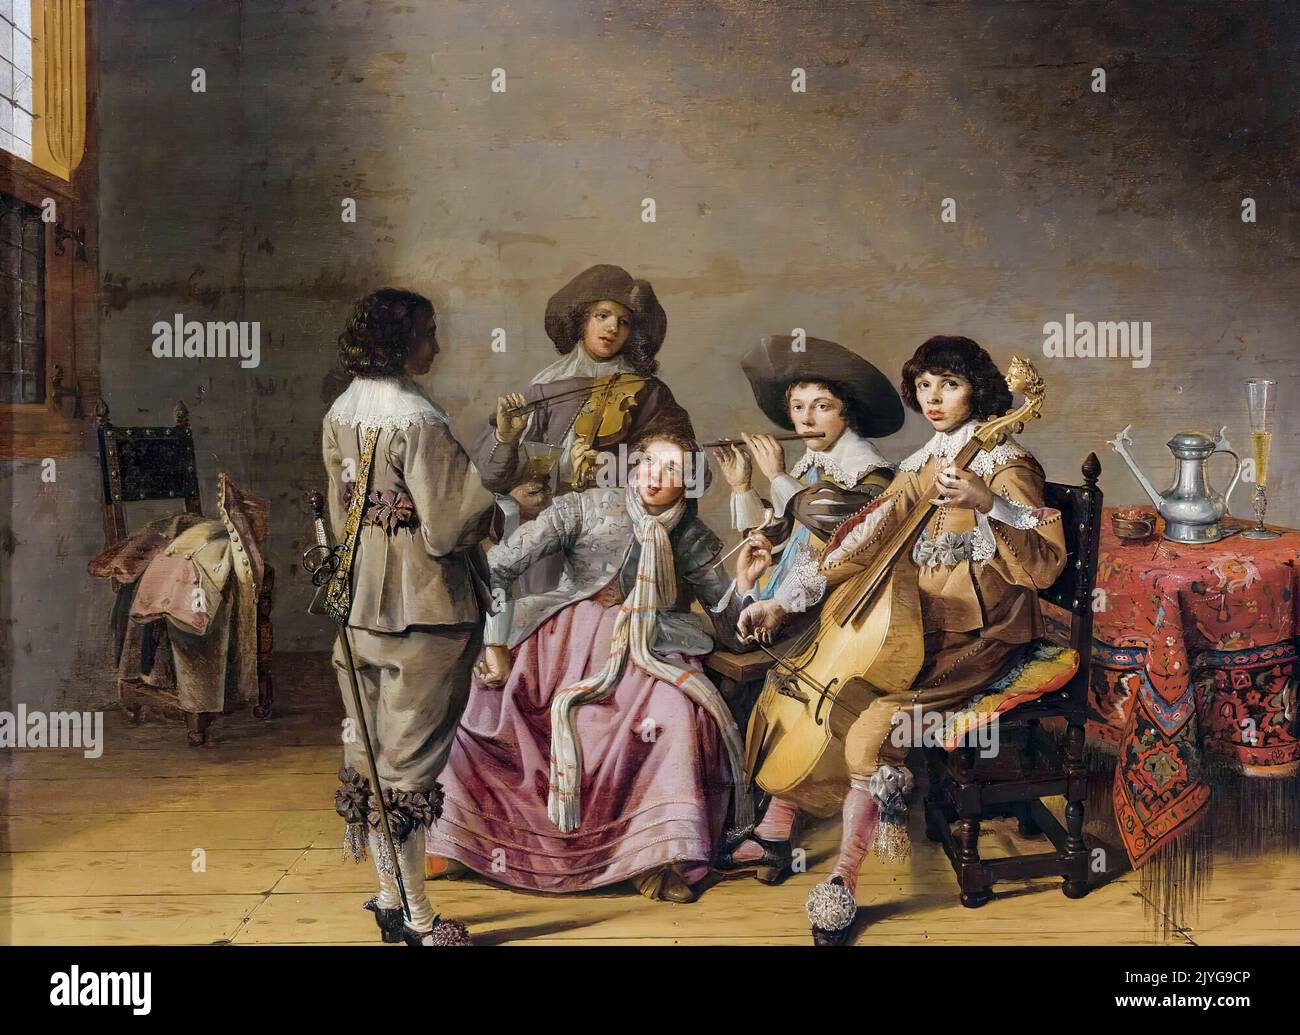 Attribuito a David Bailly, intrattenimento musicale, pittura in olio su pannello, prima del 1657 Foto Stock